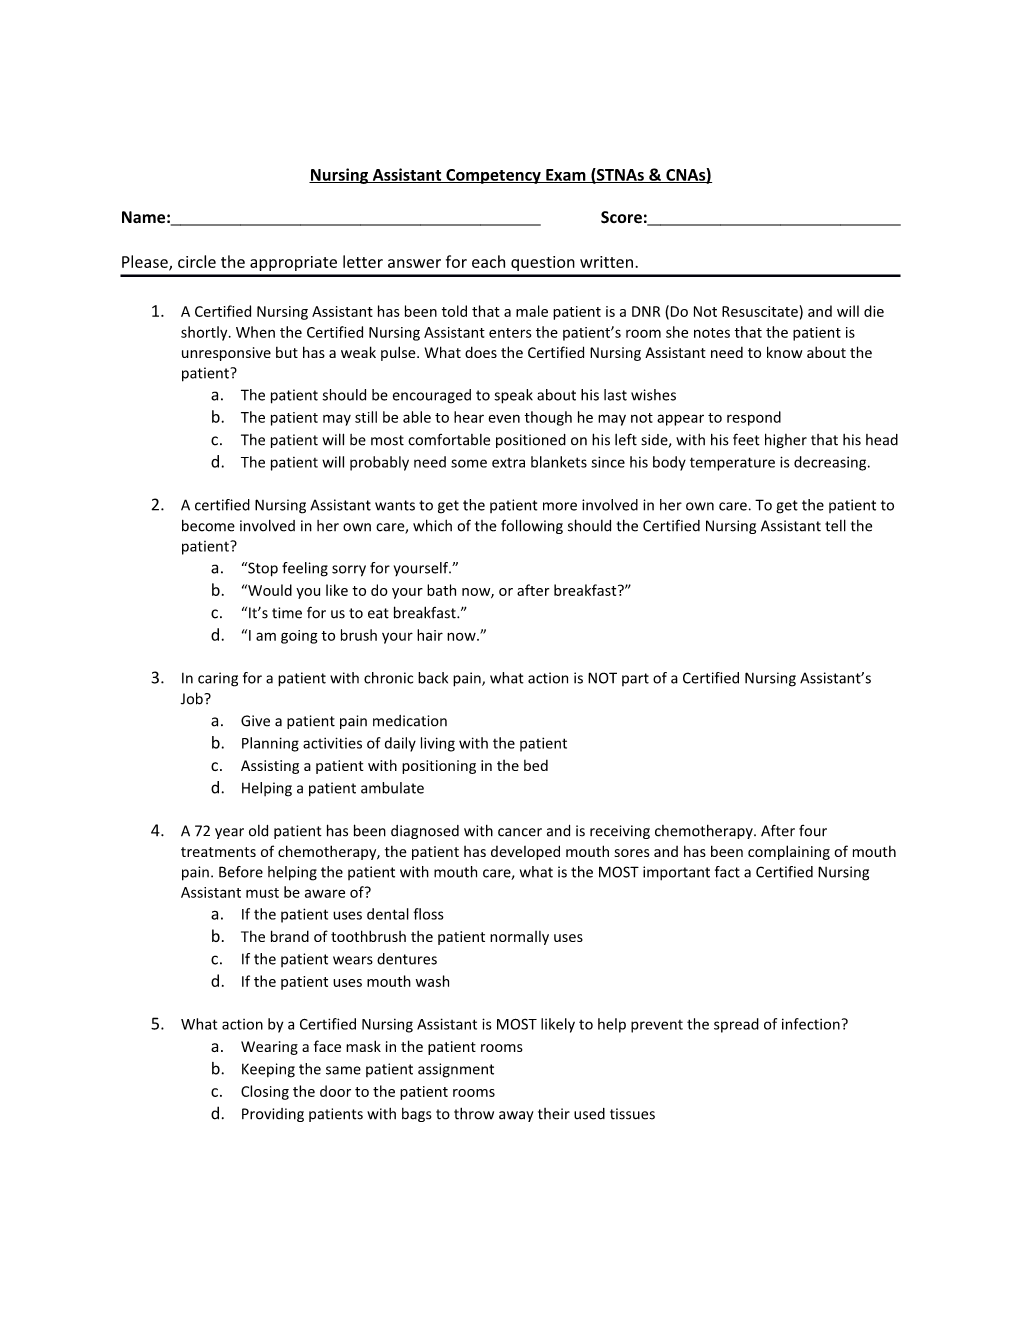 Nursing Assistant Competency Exam (Stnas & Cnas)